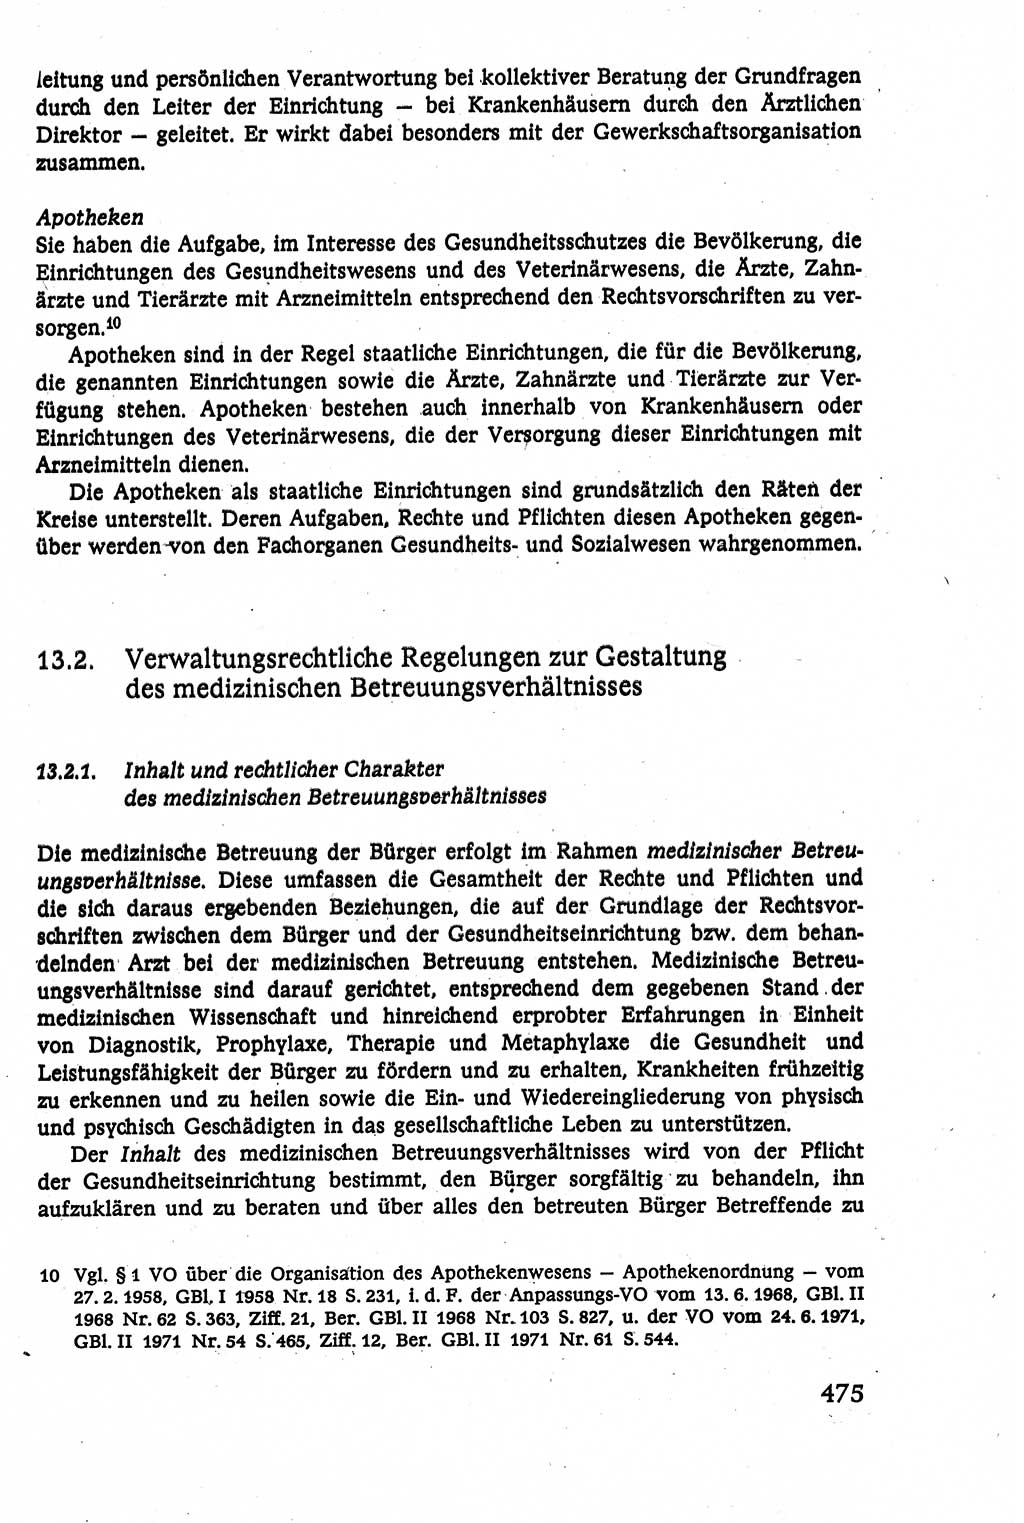 Verwaltungsrecht [Deutsche Demokratische Republik (DDR)], Lehrbuch 1979, Seite 475 (Verw.-R. DDR Lb. 1979, S. 475)